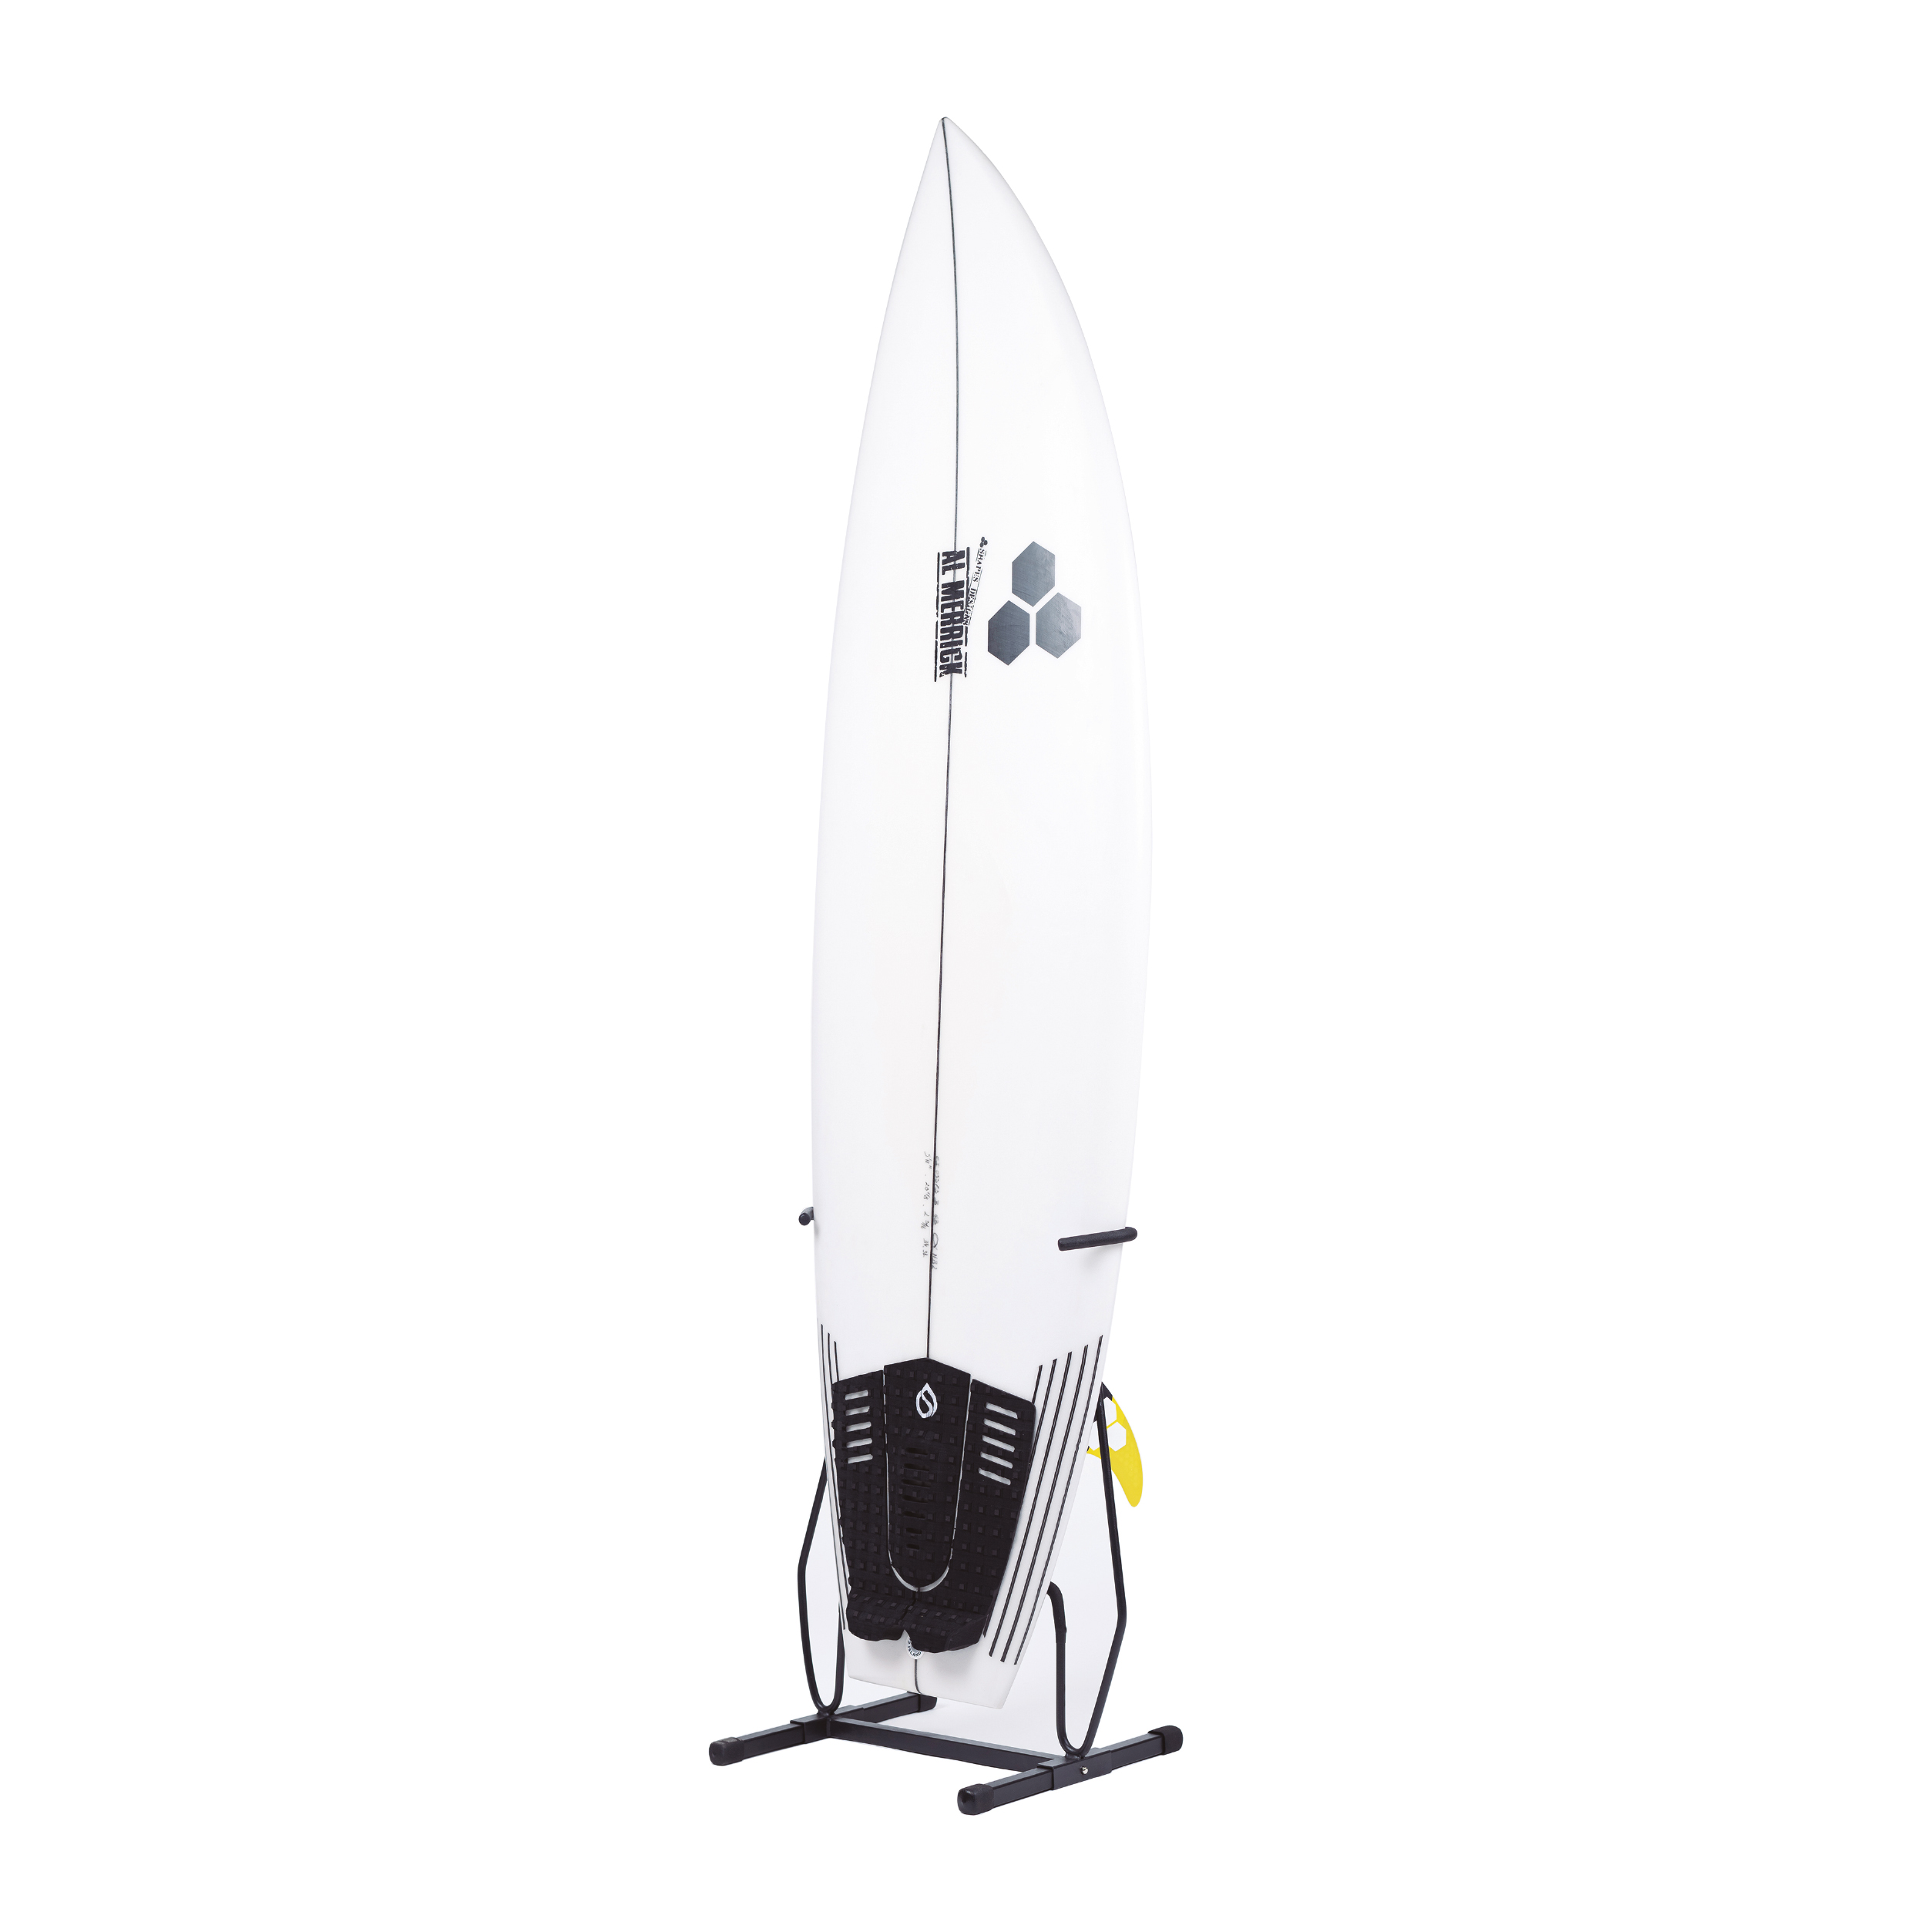 Soporte para tabla de surf a medida - Batlló Concept - Diseño y